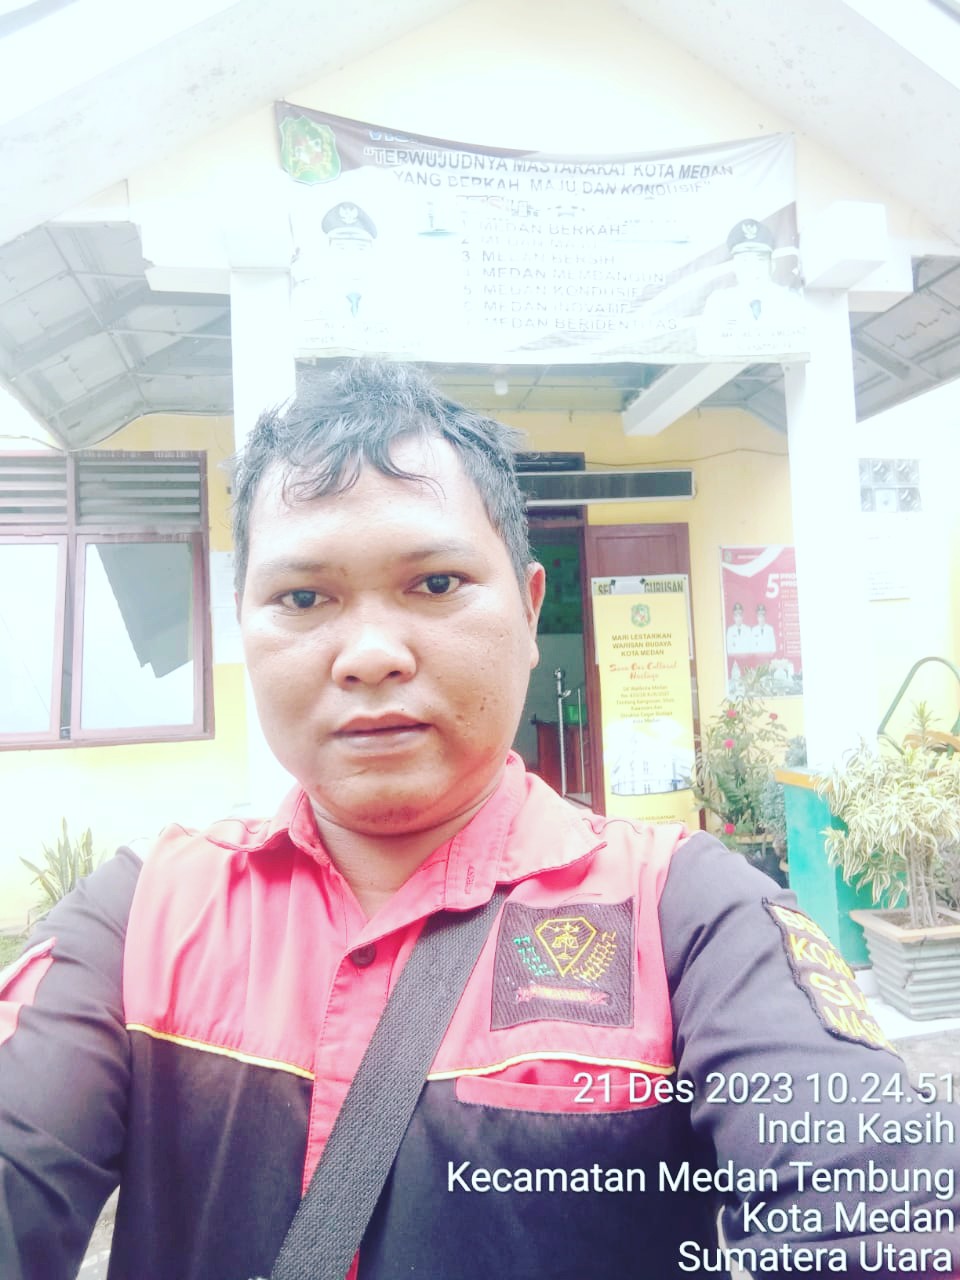 LSM PI Minta Inspektorat Kota Medan Periksa Lurah Indra Kasih Kecamatan Medan Tembung Terkait Dugaan "Pencurian" Aset